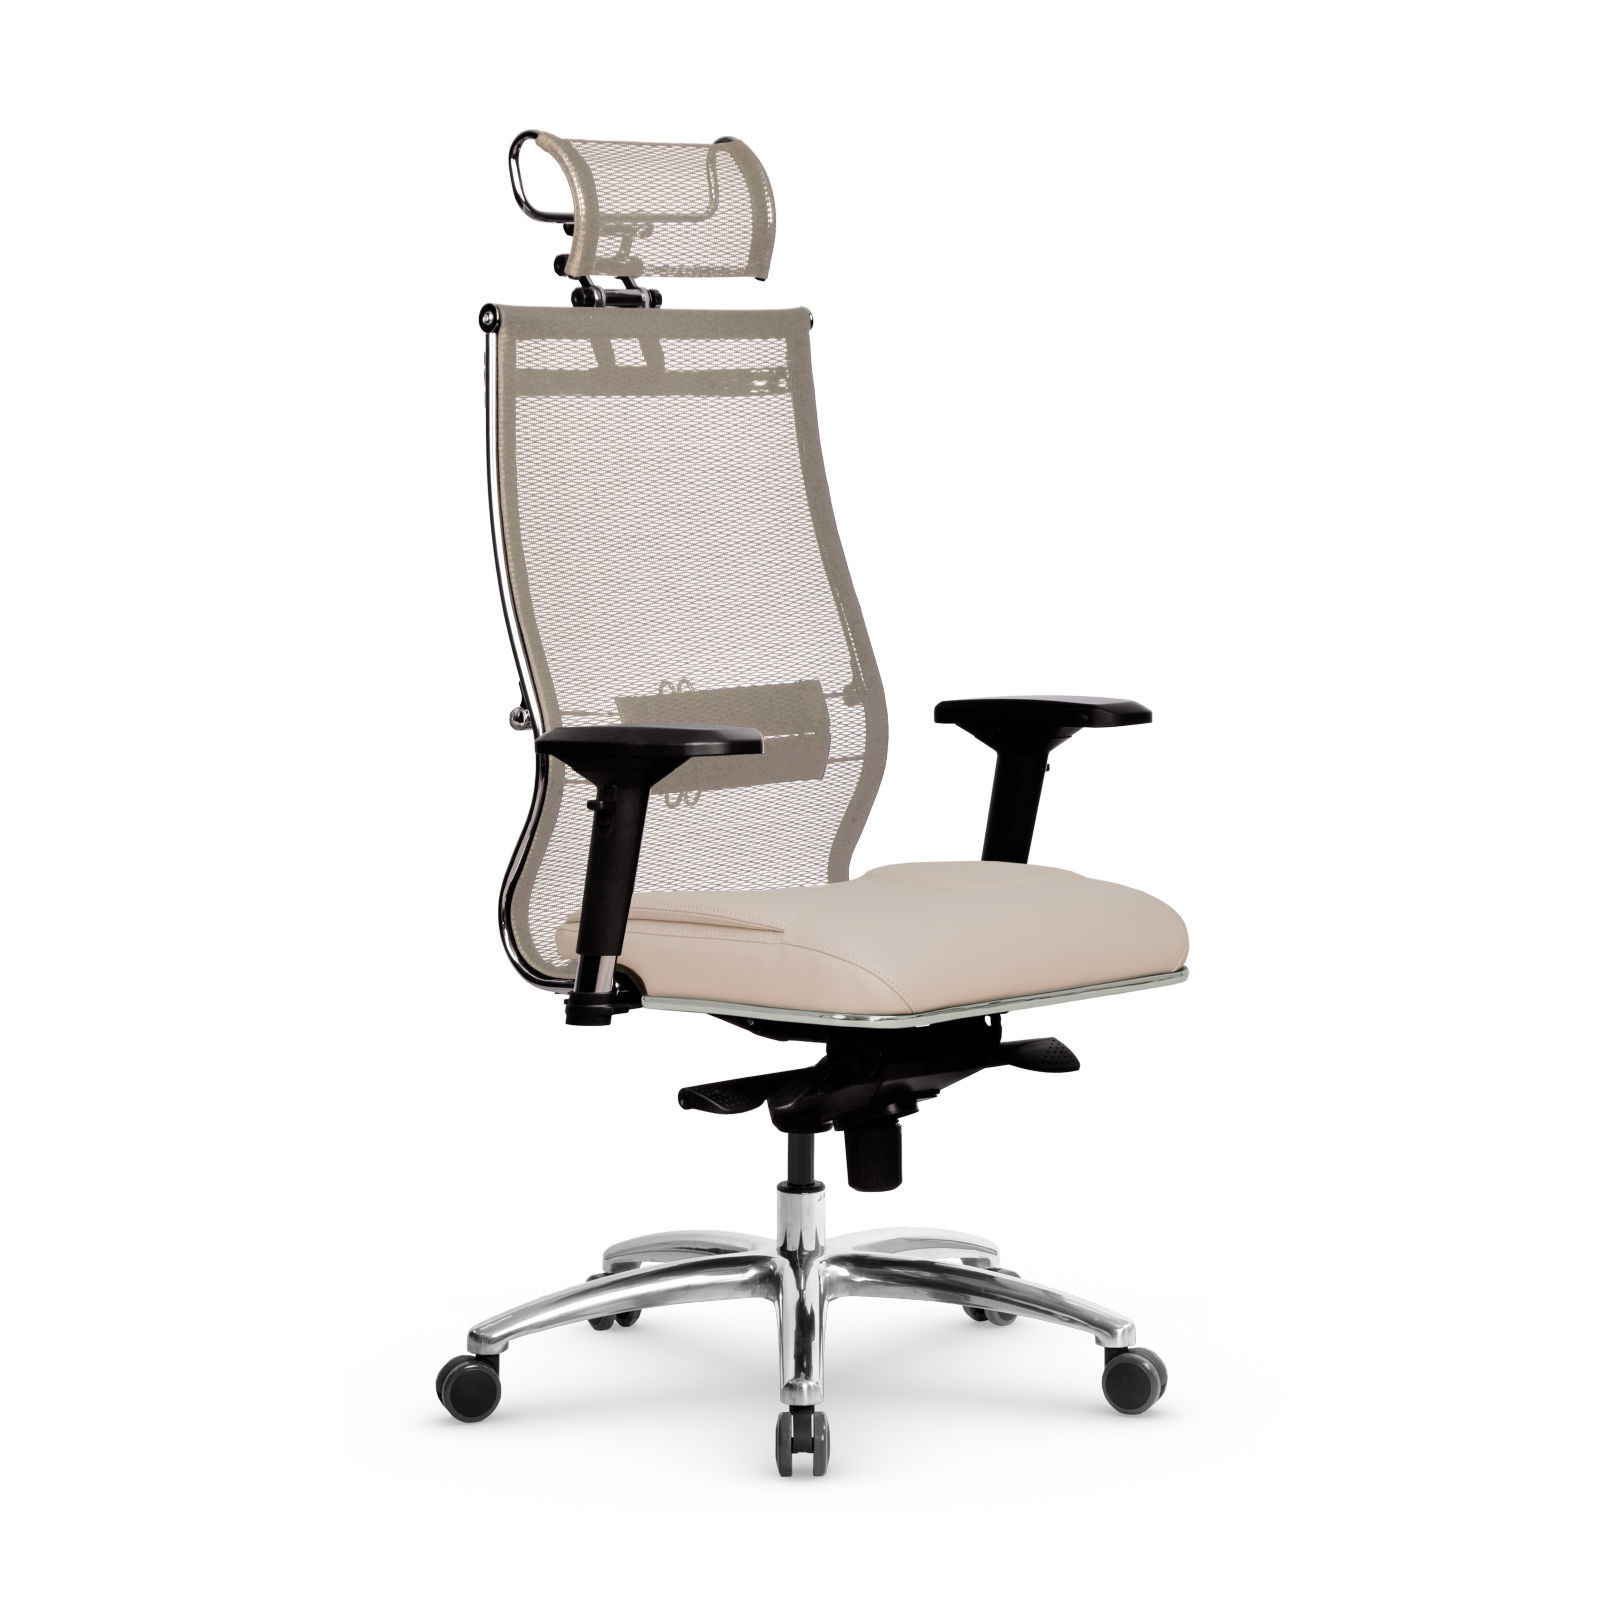 Кресло Samurai SL-3.05 MPES, офисное кресло, компьютерное кресло, кресло самурай, кресло для дома и офиса, кресто Metta (Бежевый/Молочный)